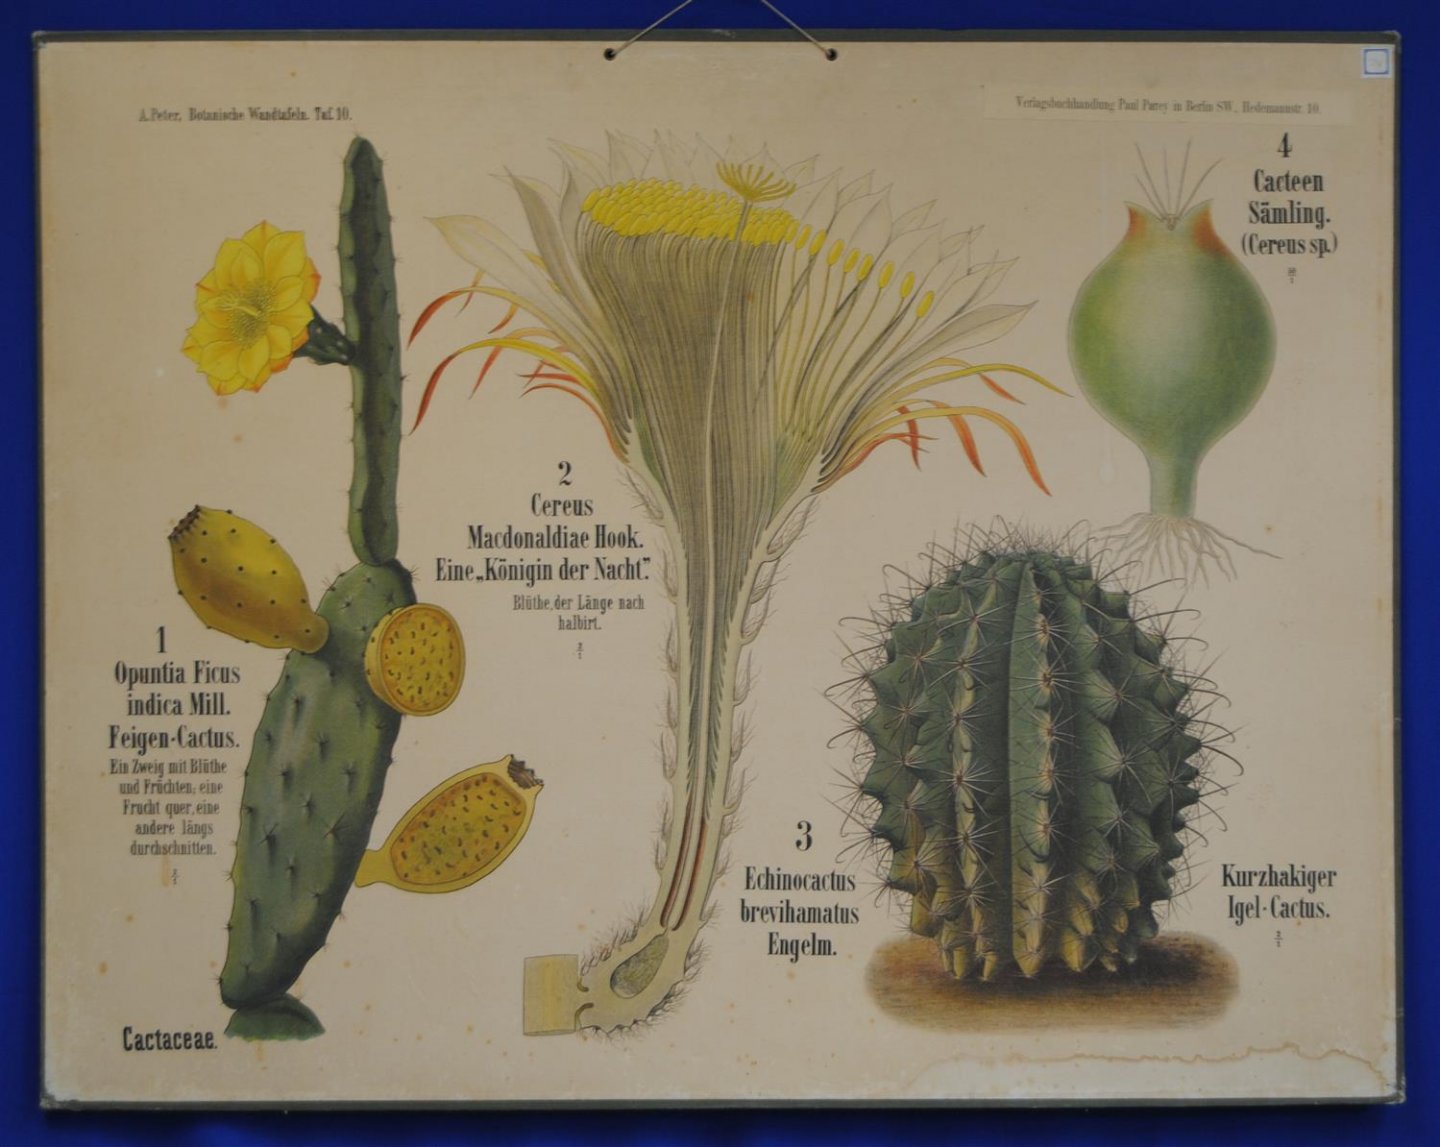 Peter. A. - (SCHOOLPLAAT - SCHOOL POSTER / MAP - LEHRTAFEL) Botanische Wandtafeln. Tafel 10., CACTACEAE